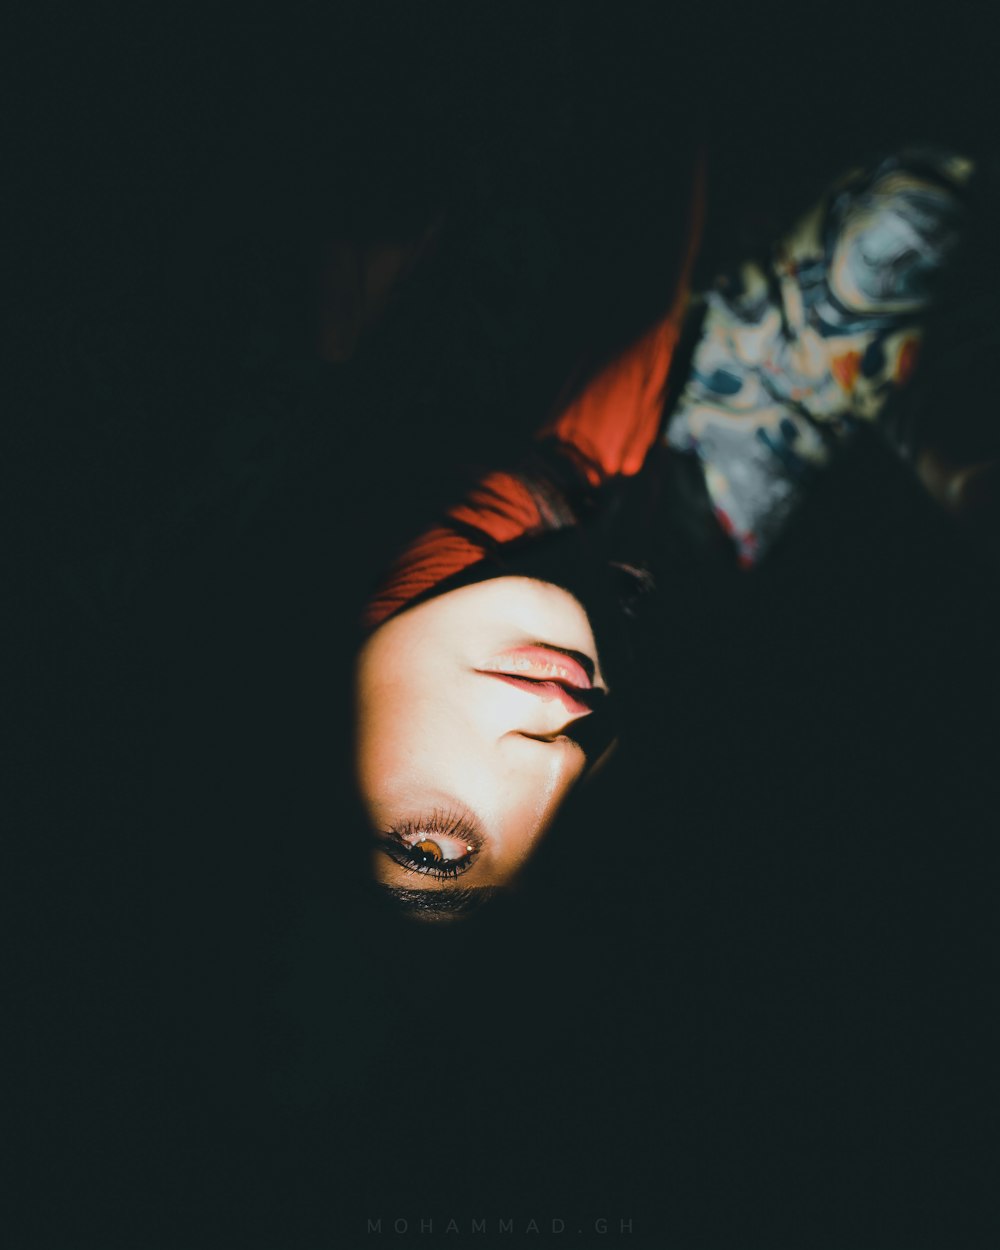 Una donna sdraiata al buio con gli occhi chiusi